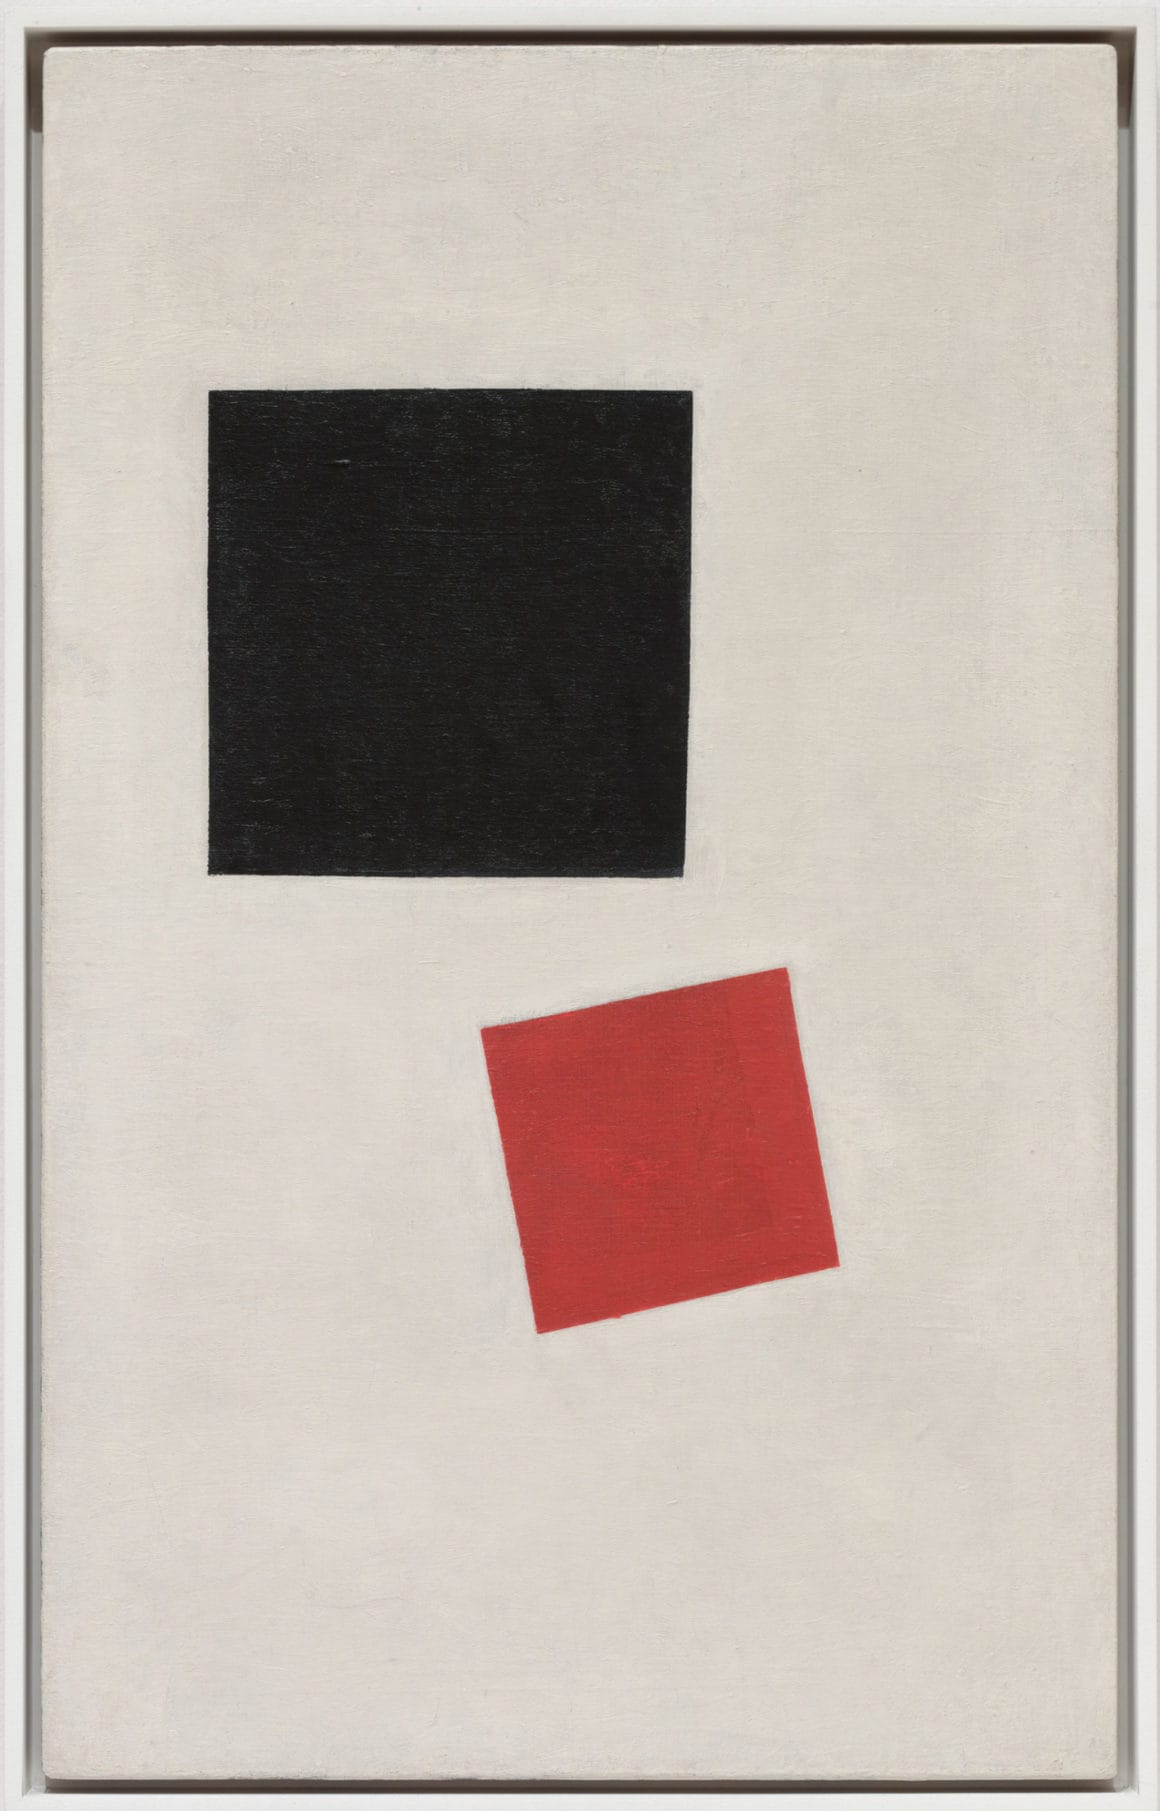 Oeuvre Carré noir et carré rouge de Malevitch